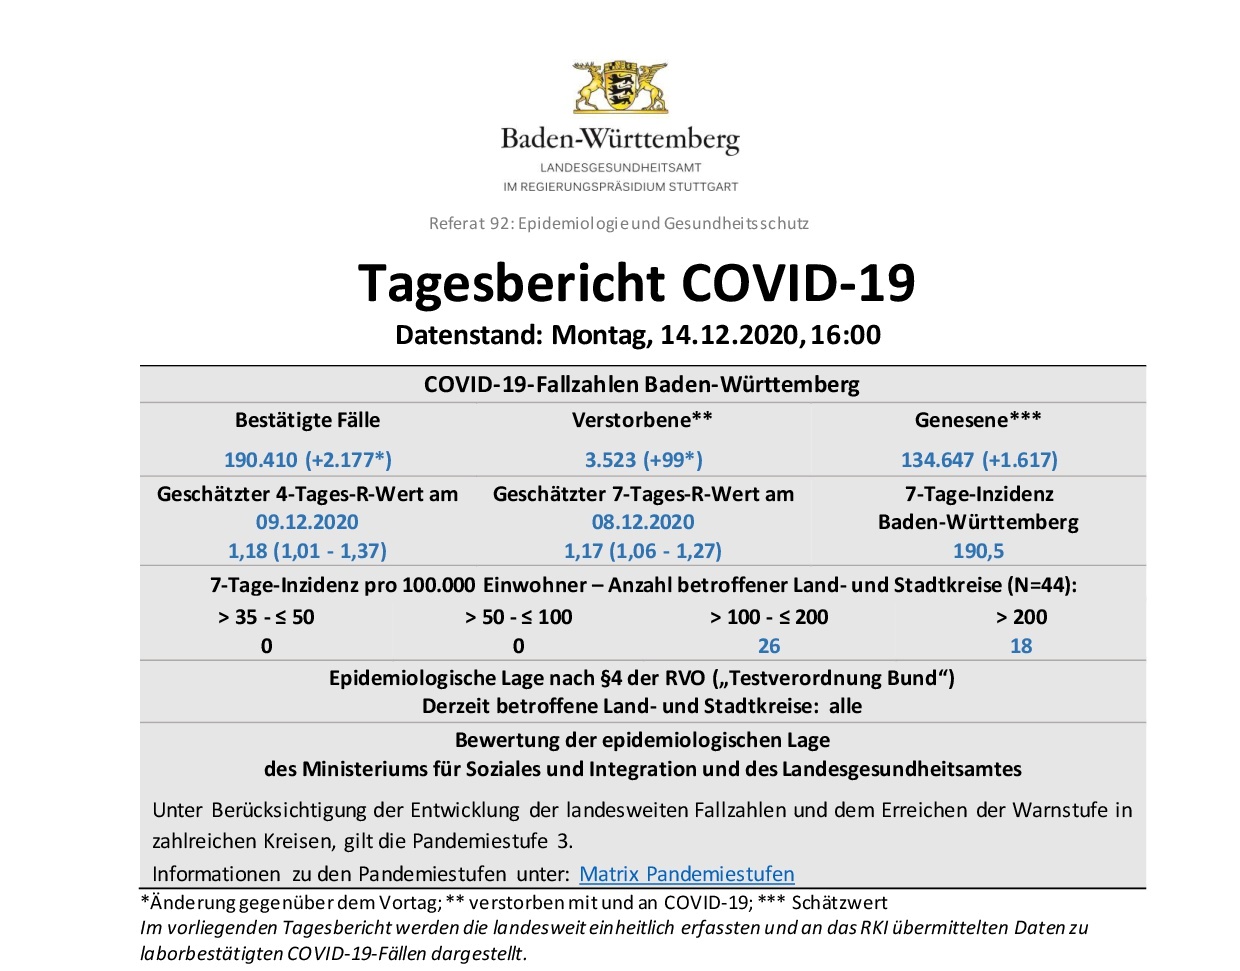 COVID-19 Tagesbericht (14.12.2020) des Landesgesundheitsamts Baden-Württemberg – (ausführlich)